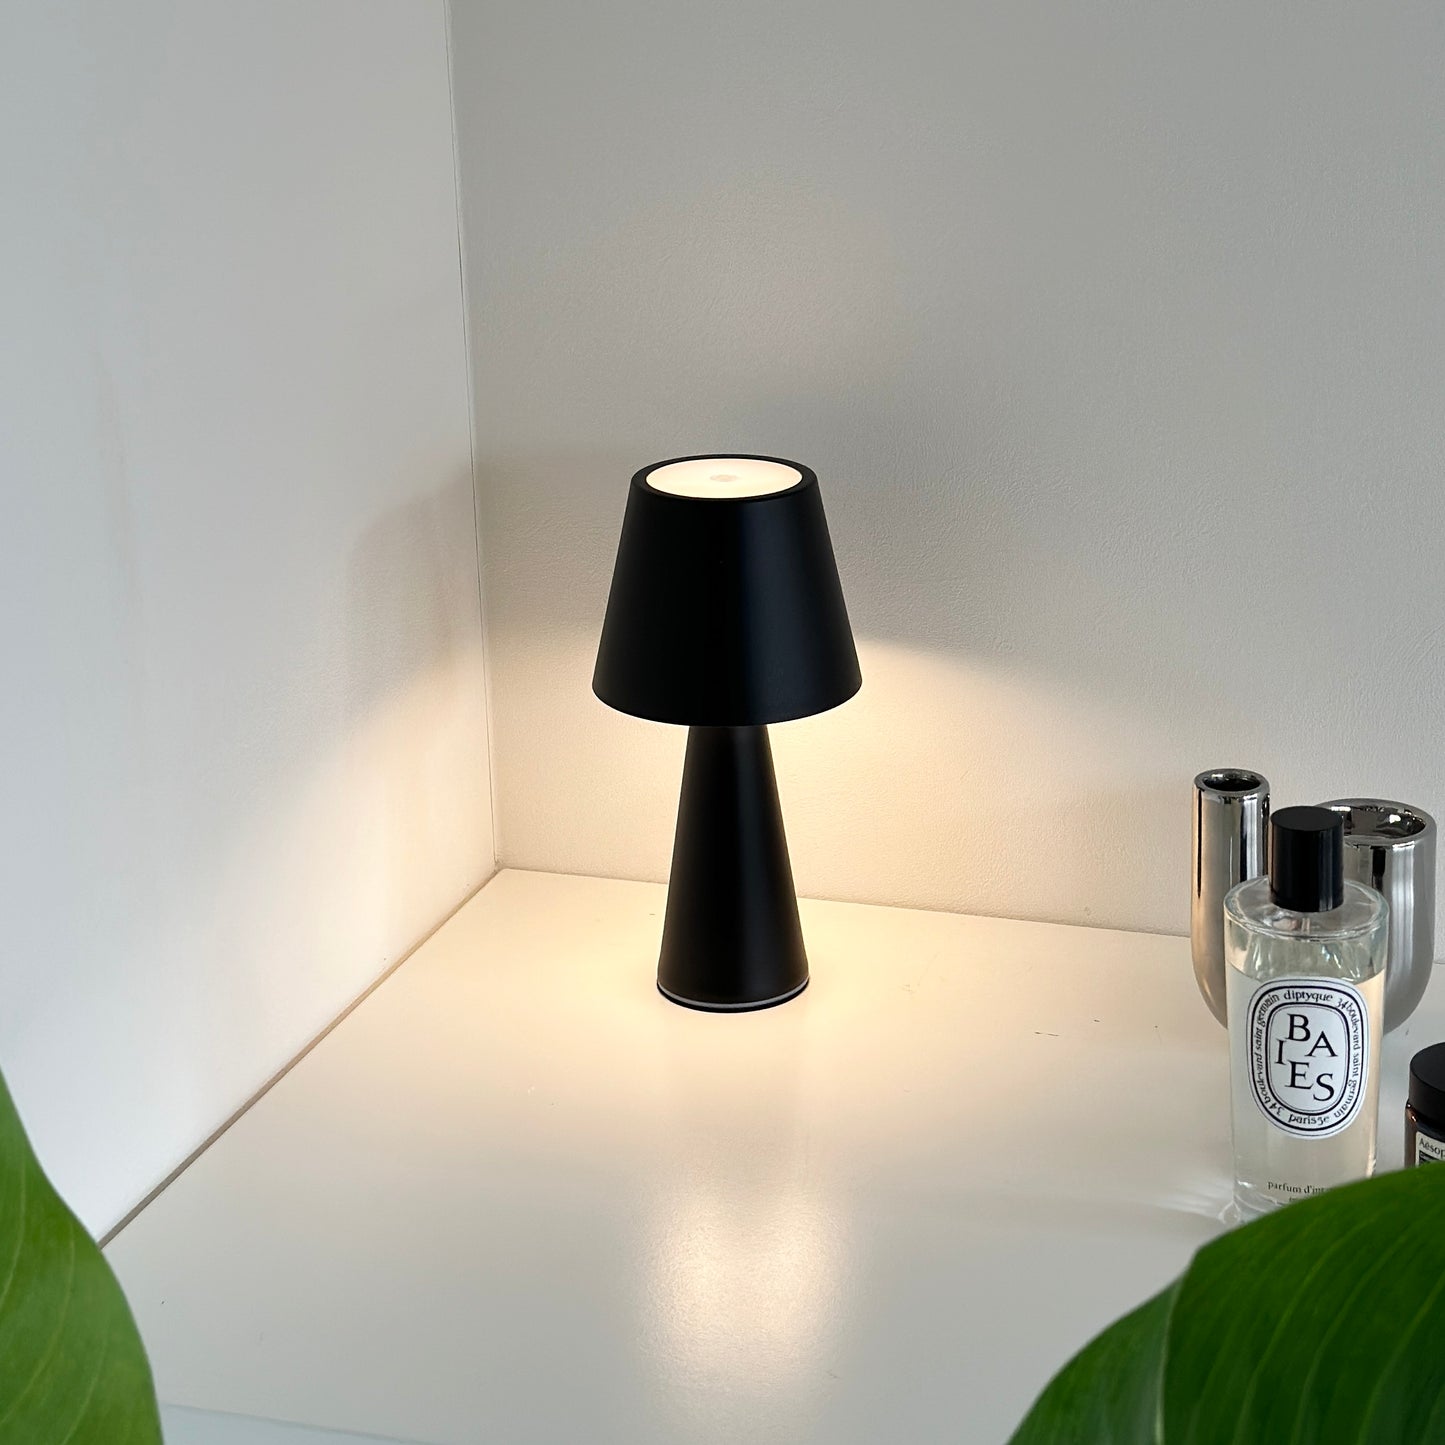 マット素材のシンプルな黒色のテーブルランプ